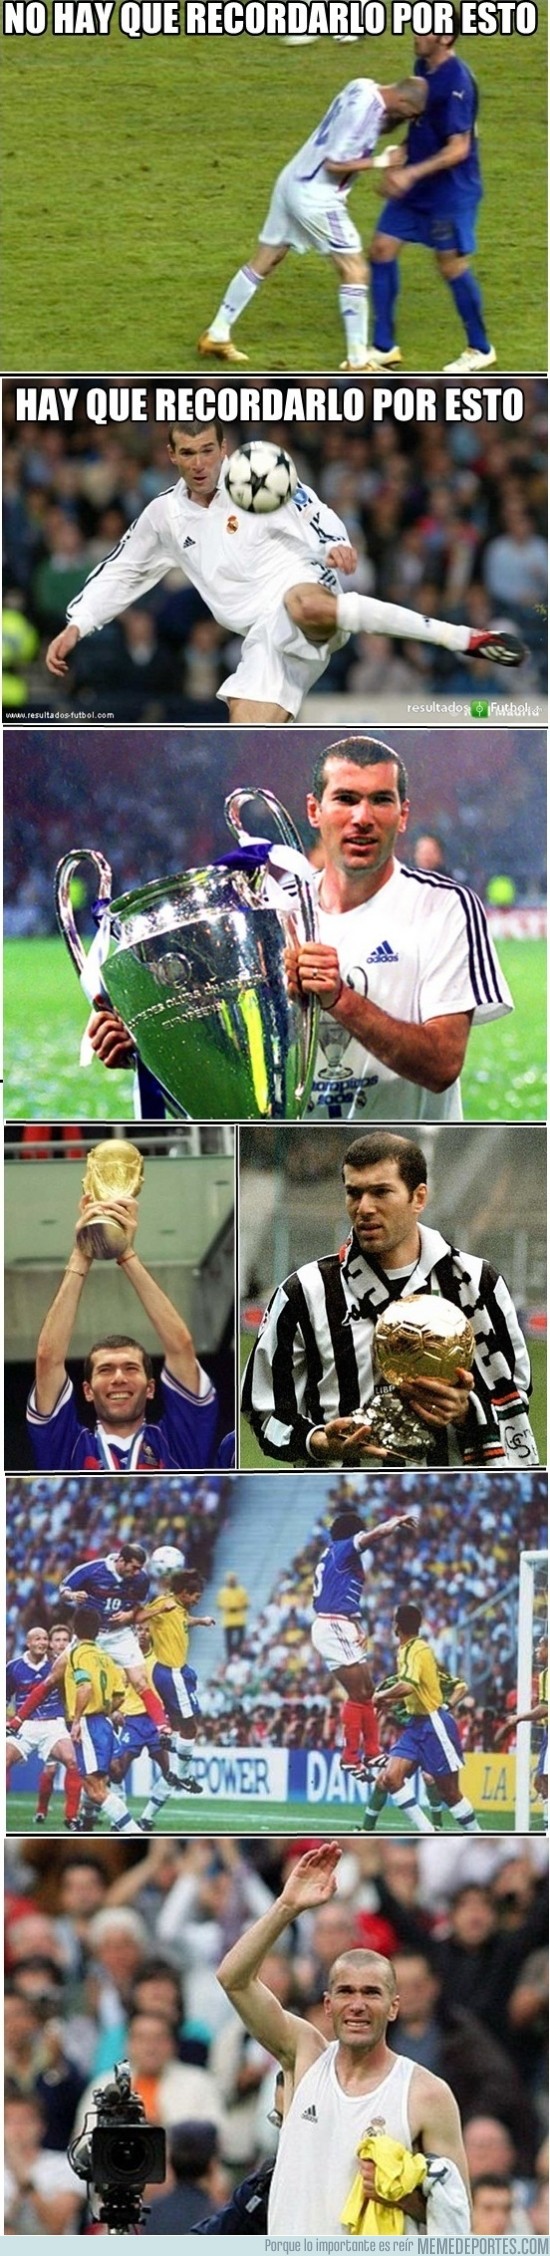 76902 - Por esto hay que recordar a Zidane